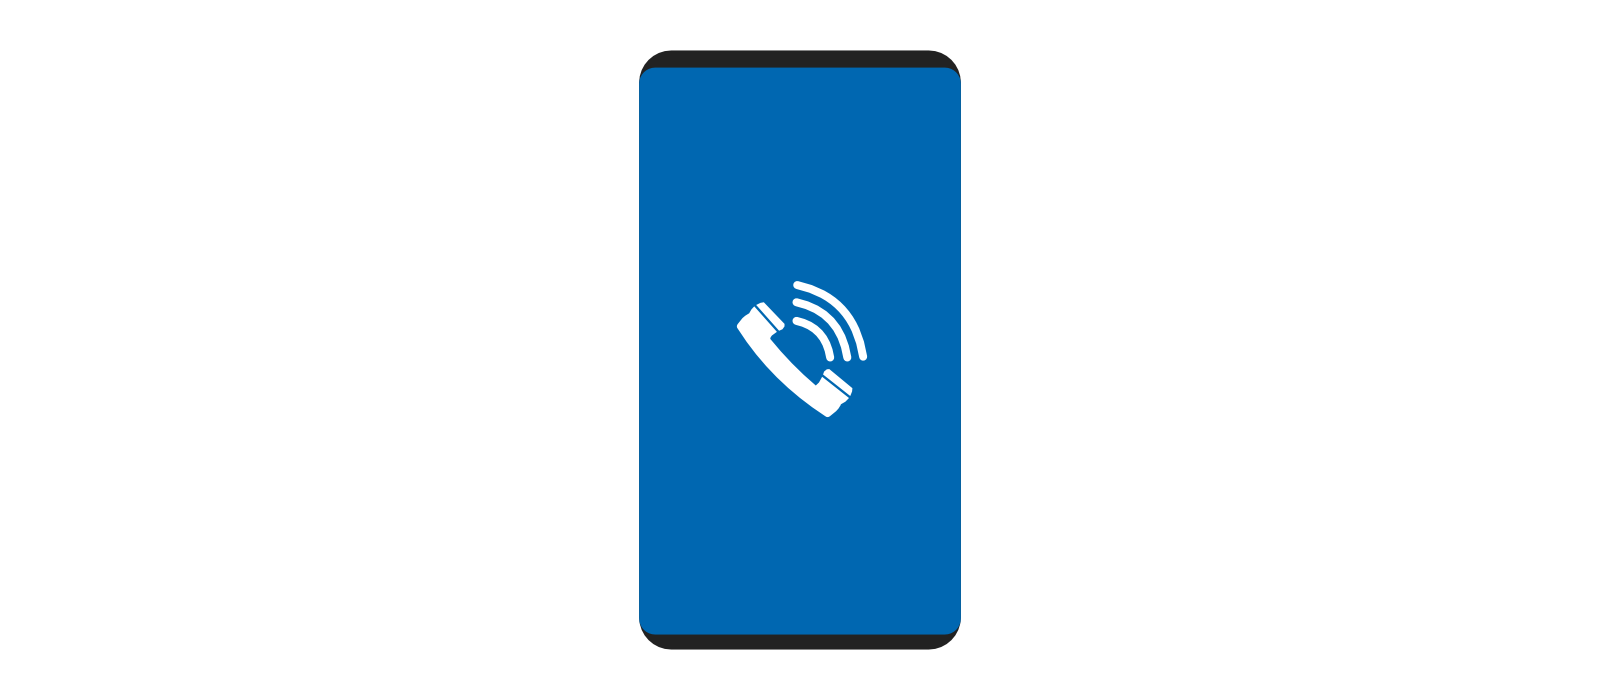 un smartphone sur fond blanc. L'écran est du même bleu que le logo de la société et au centre l'icône d'un téléphone avec des ondes.